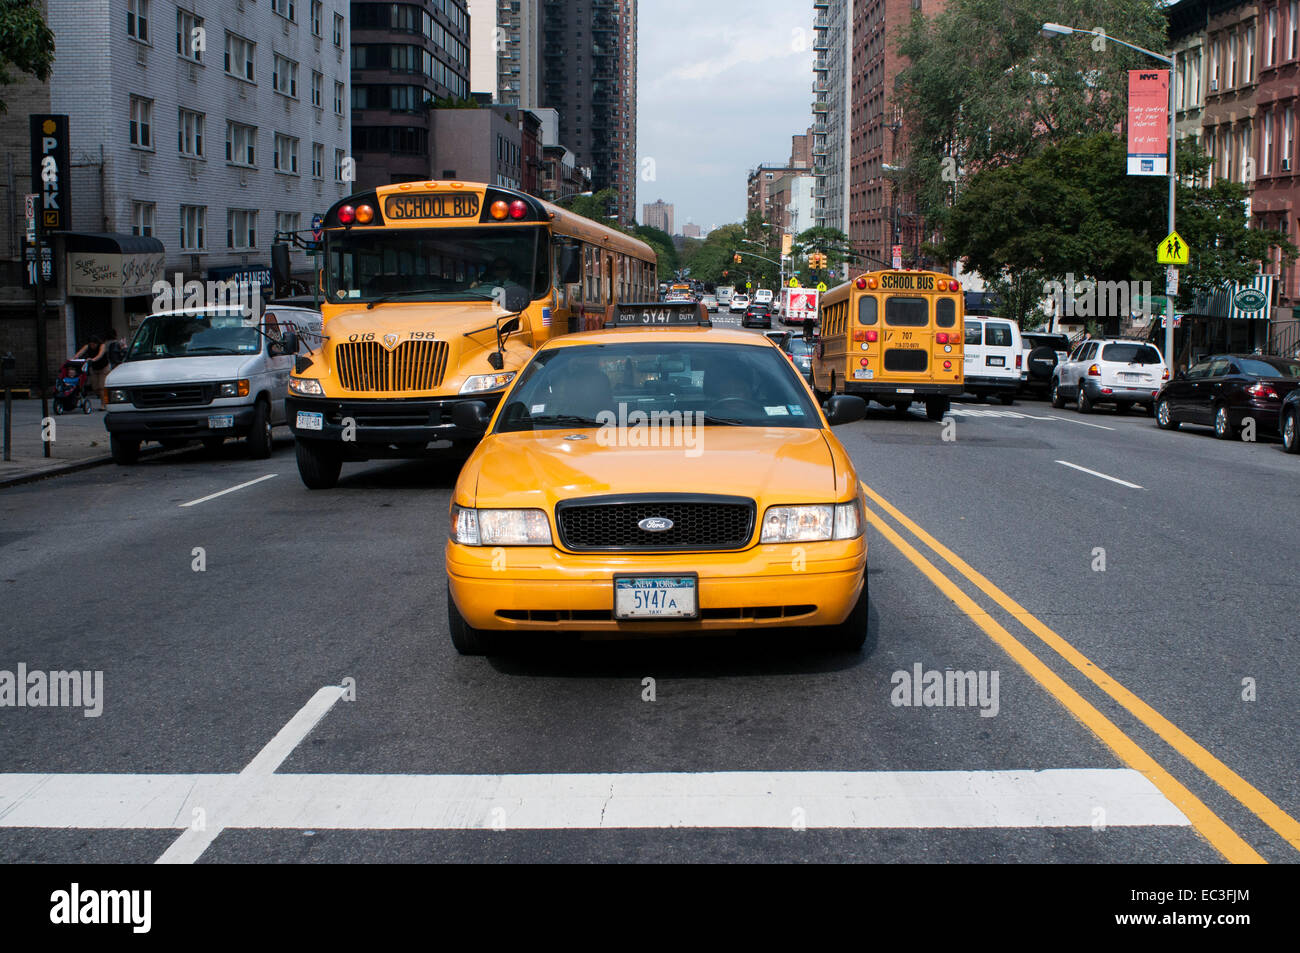 Stati Uniti, New York City, Manhattan, scuola-bus e taxi. Un bus di scuola (chiamato anche schoolbus) in America del Nord è una t Foto Stock